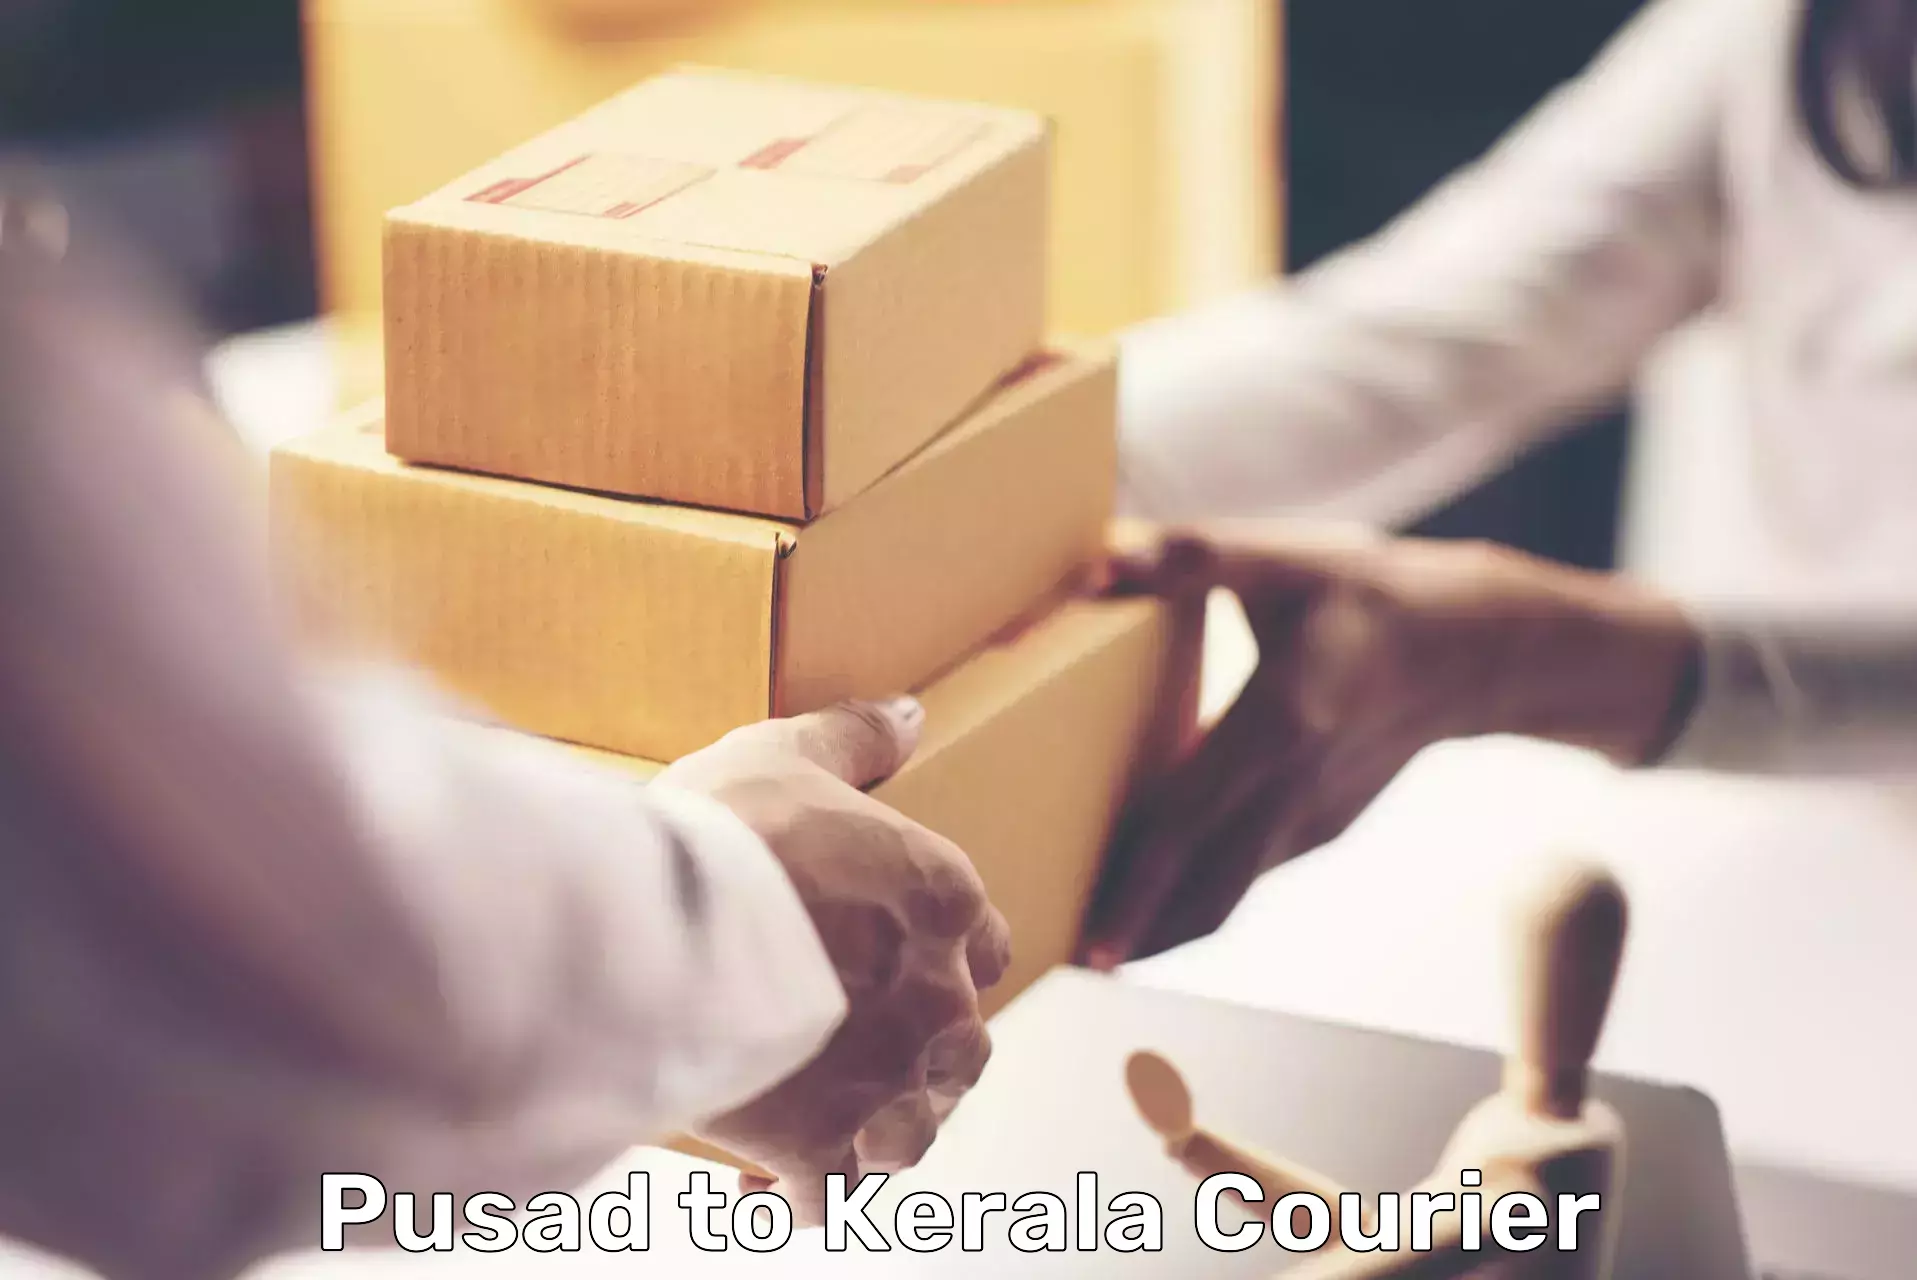 Bulk shipping discounts Pusad to Kerala